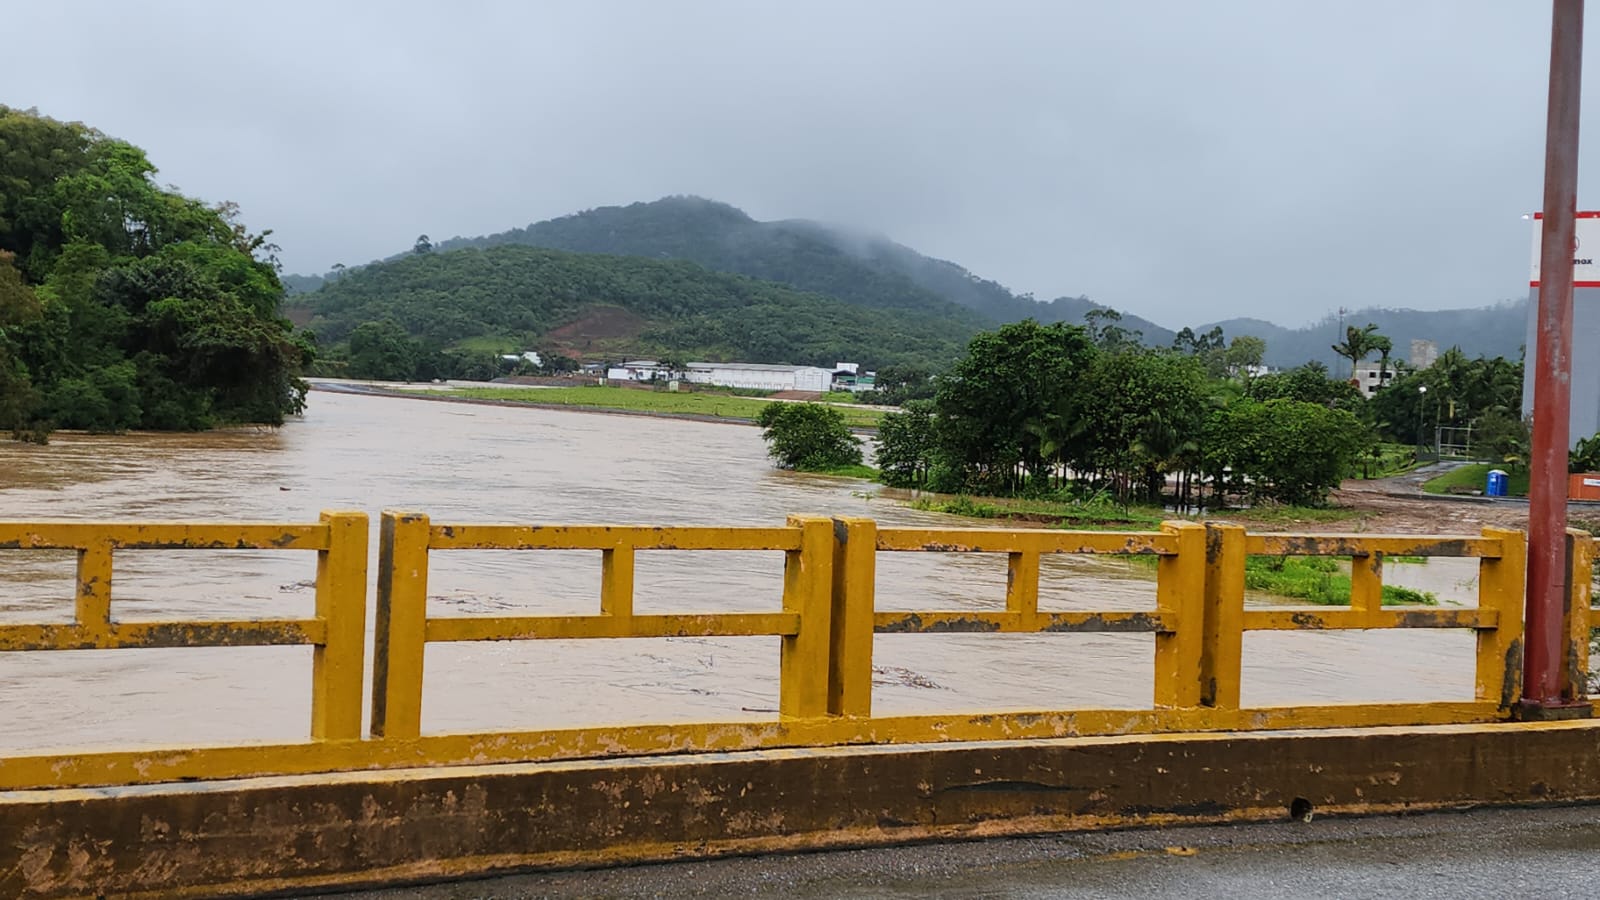 Nível dos rios está alto, segundo informações da prefeitura de Jaraguá do Sul (crédito da foto: Prefeitura Municipal de Jaraguá do Sul).